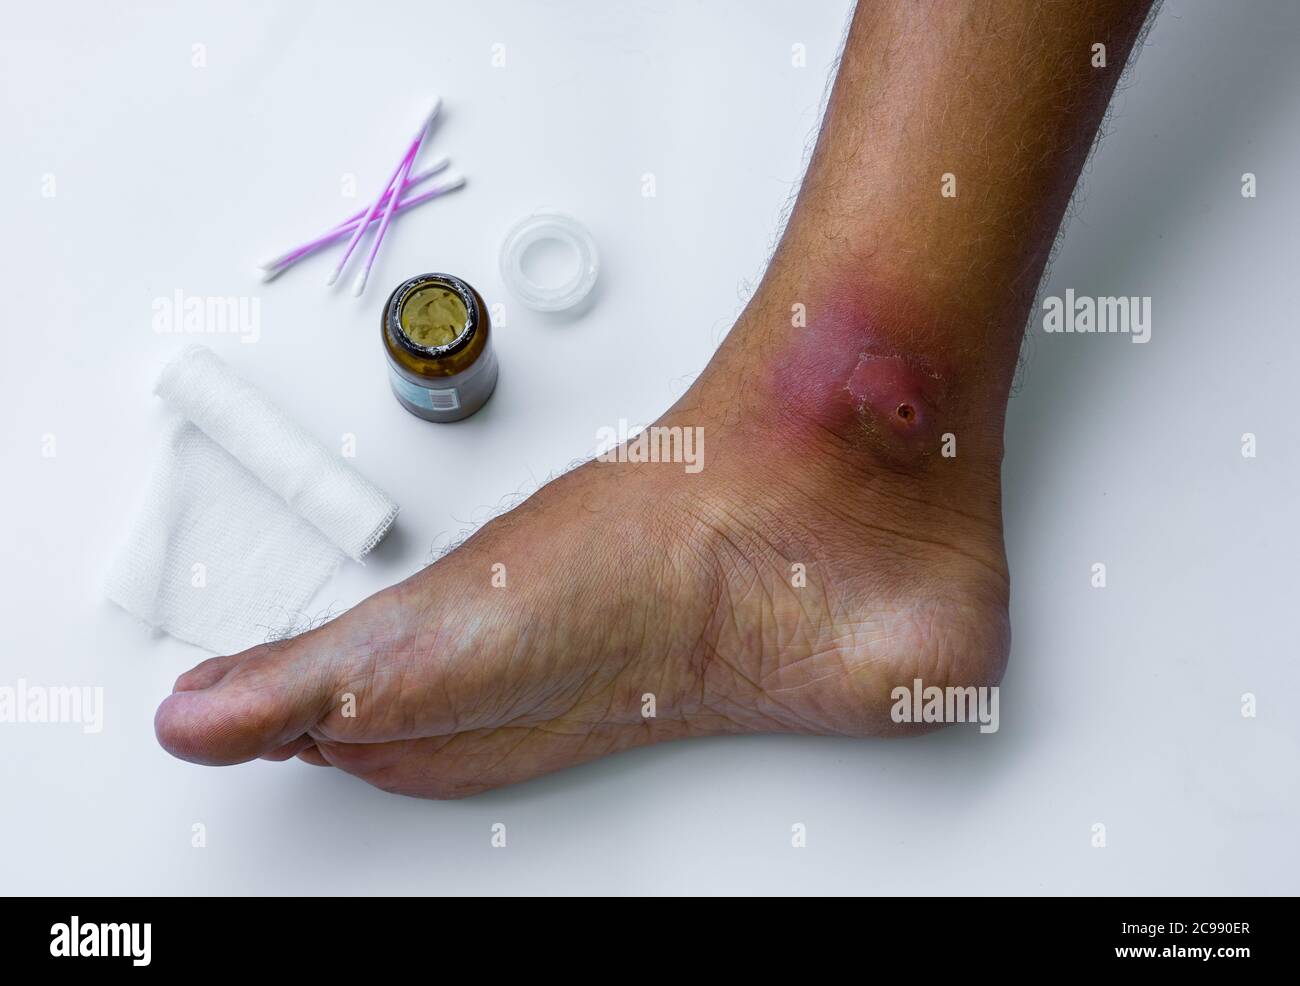 Los abscesos se forman después de las bacterias. Herida abierta purulenta infectada en el pie del hombre. Proceso de cuidado de heridas por enfullamiento. Foto de stock